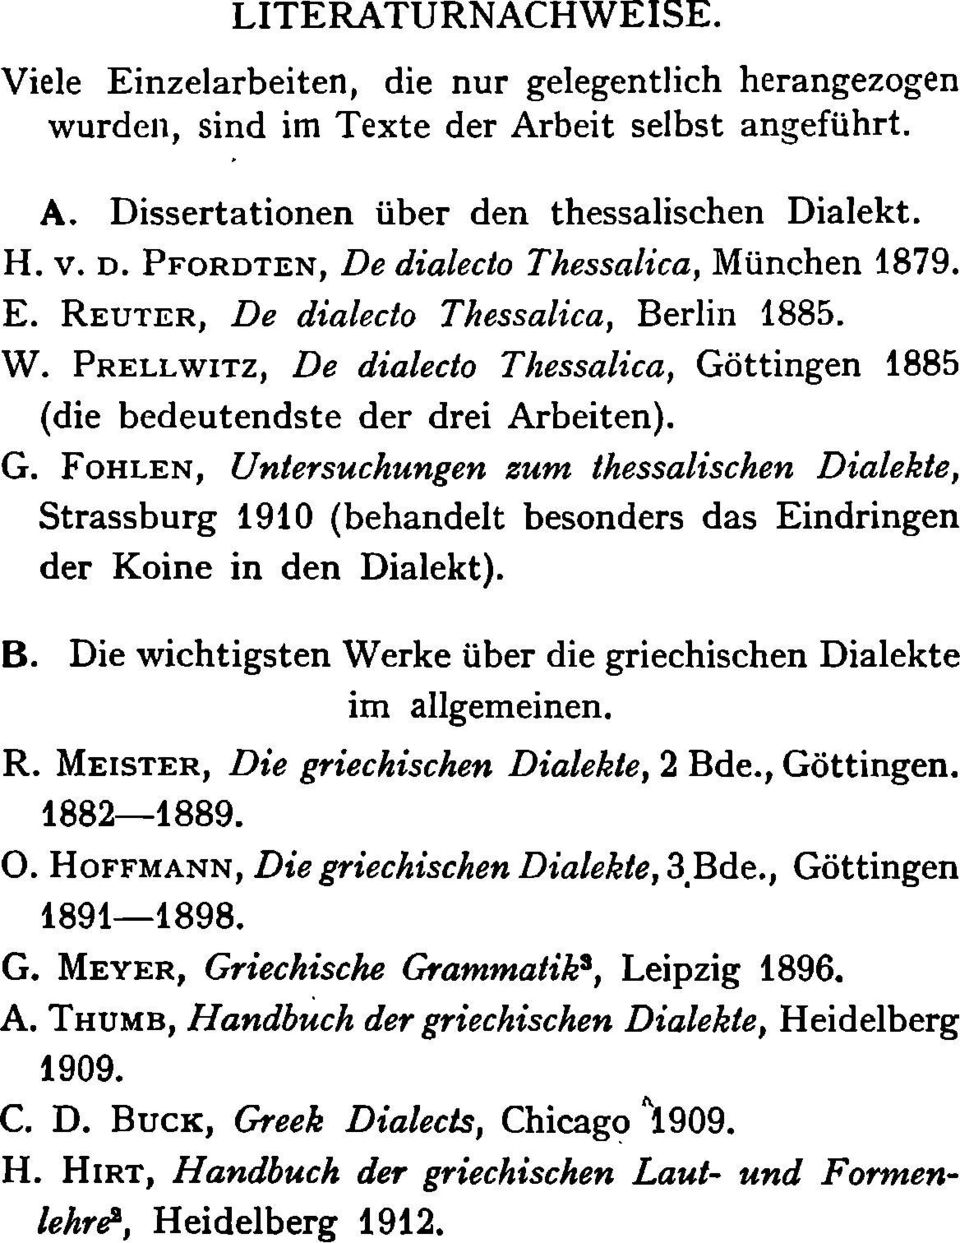 ttingen 1885 (die bedeutendste der drei Arbeiten). G. FOHLEN, Untersuchungen zum thessalischen Dialekte, Strassburg 1910 (behandelt besonders das Eindringen der Koine in den Dialekt). B.